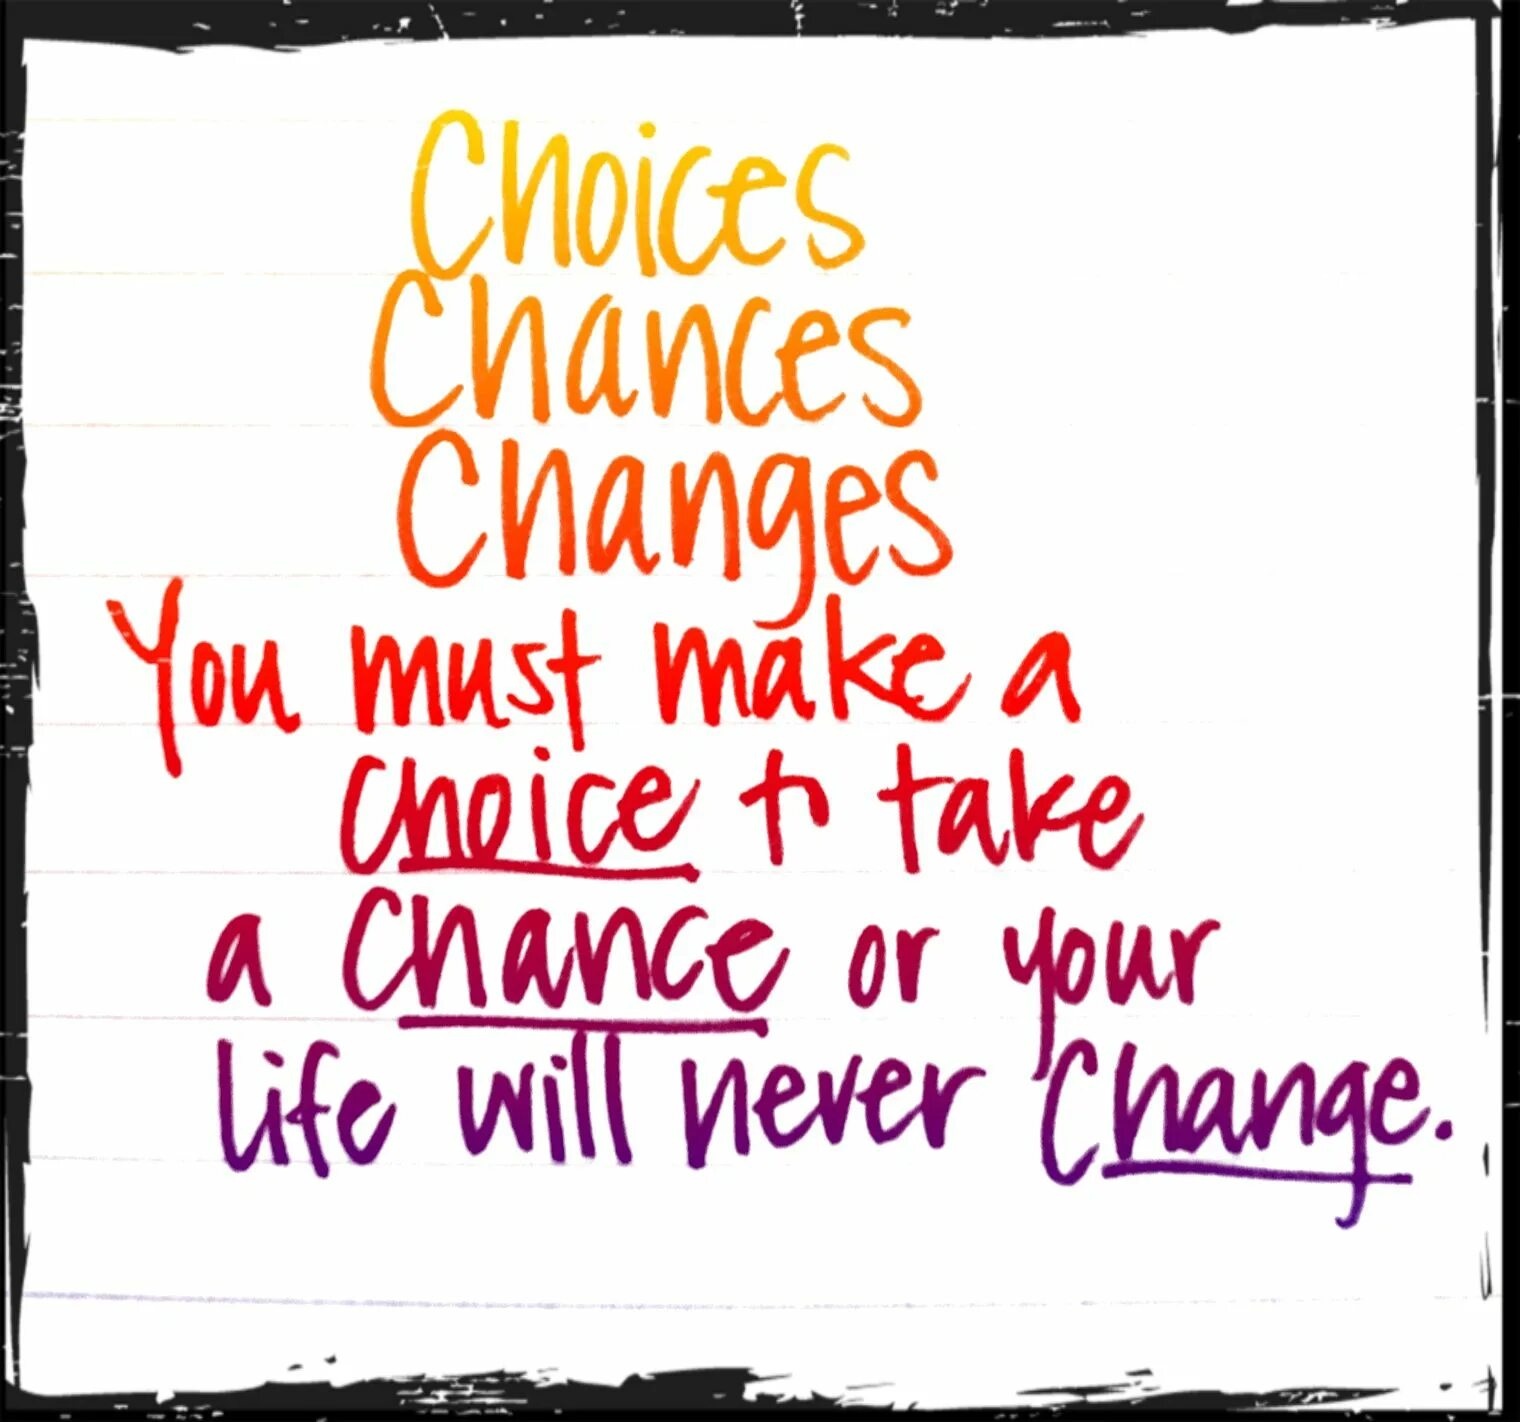 You made your choice. Make your choice. Choice chance change. Chances and choices. Your choice your Life бутылка.